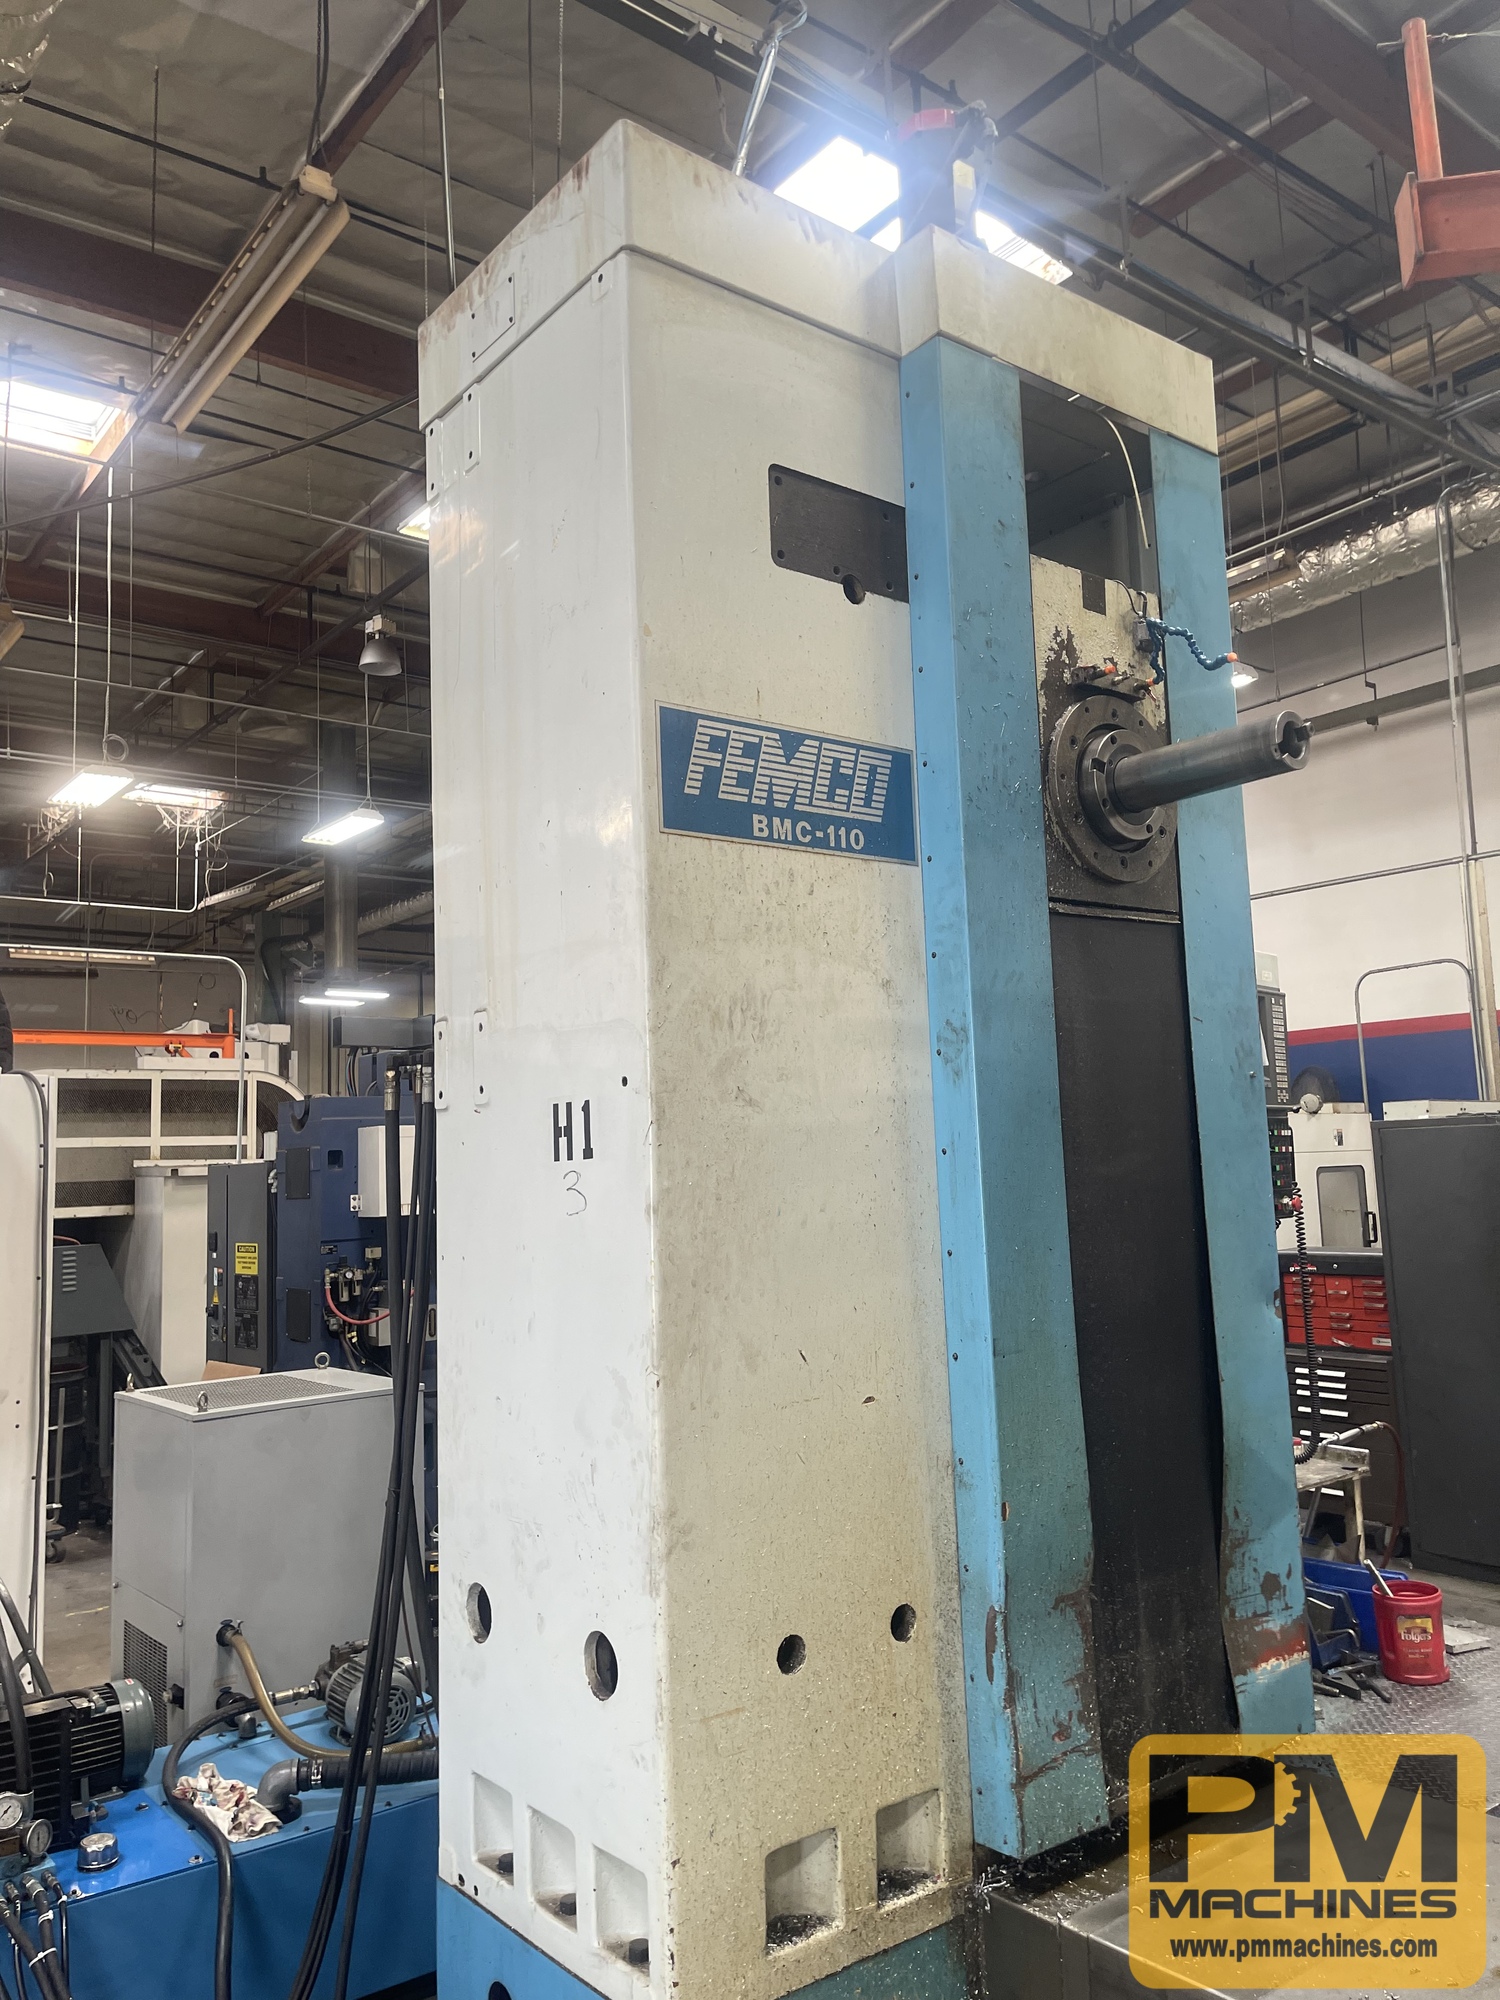 1998 FEMCO BMC-110 Horizontal Milling Center | PM Machines